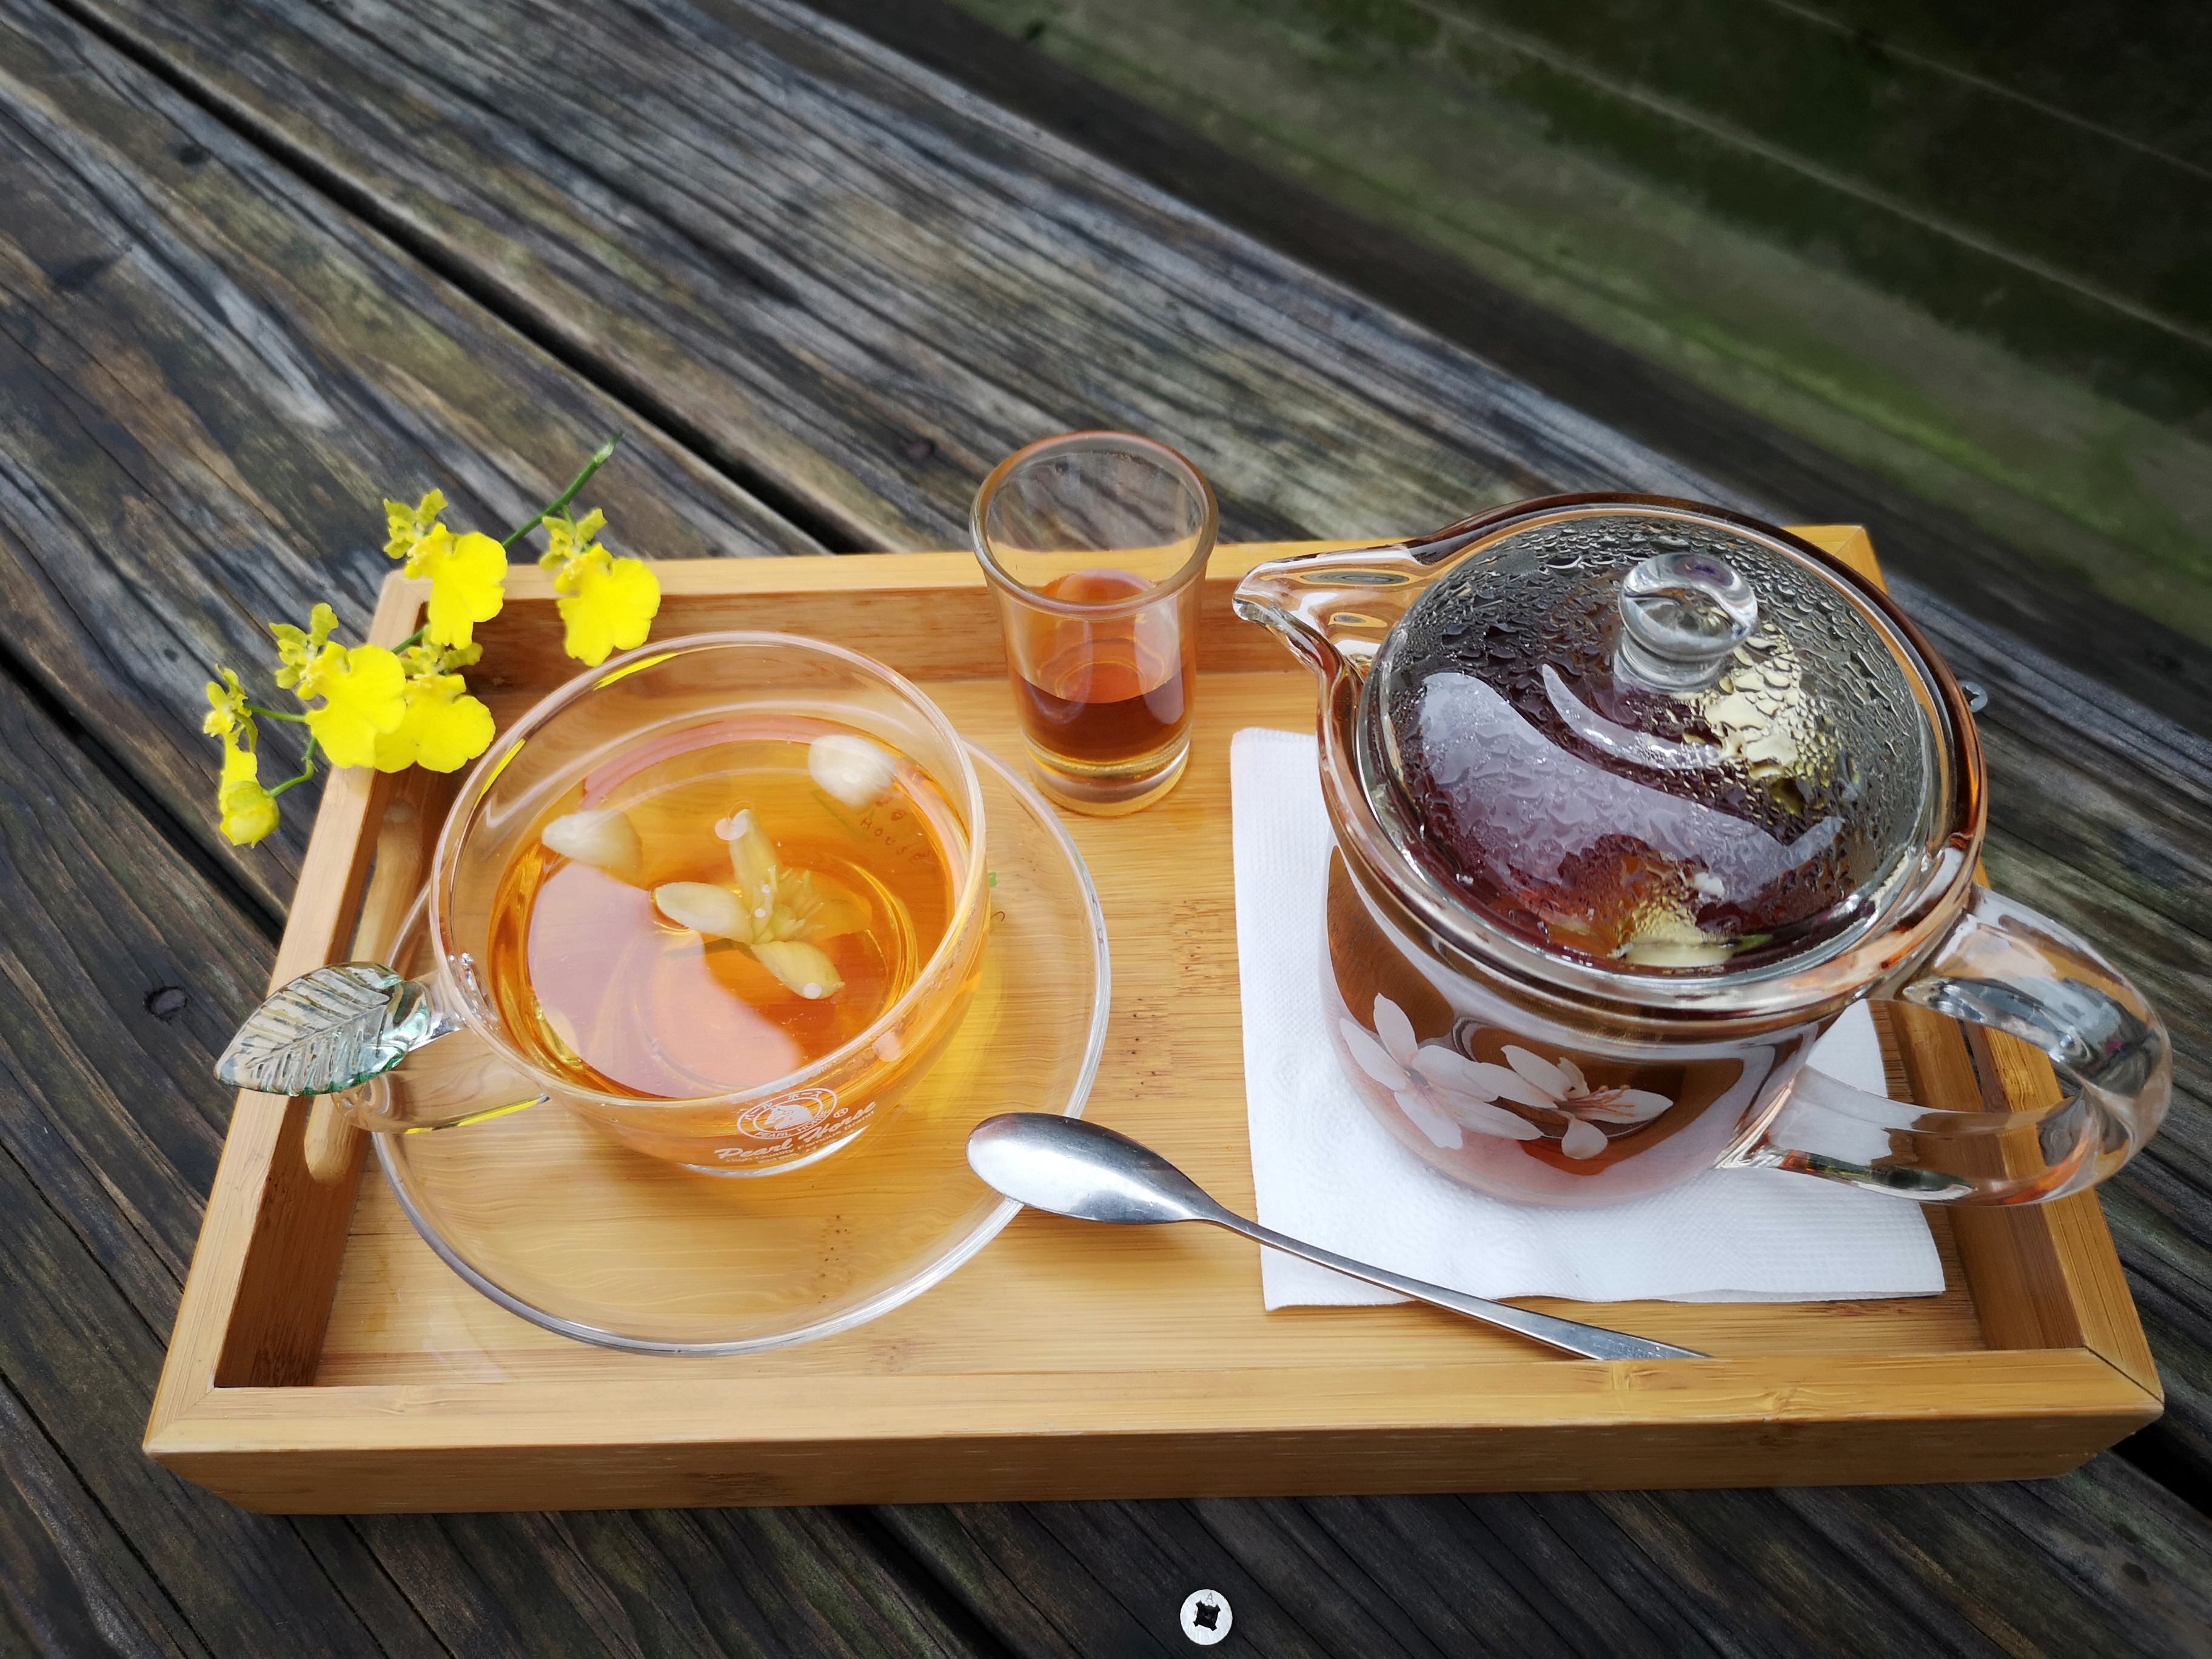 淡淡柚香的寶柚茶再加點蜂蜜，口感很讚。